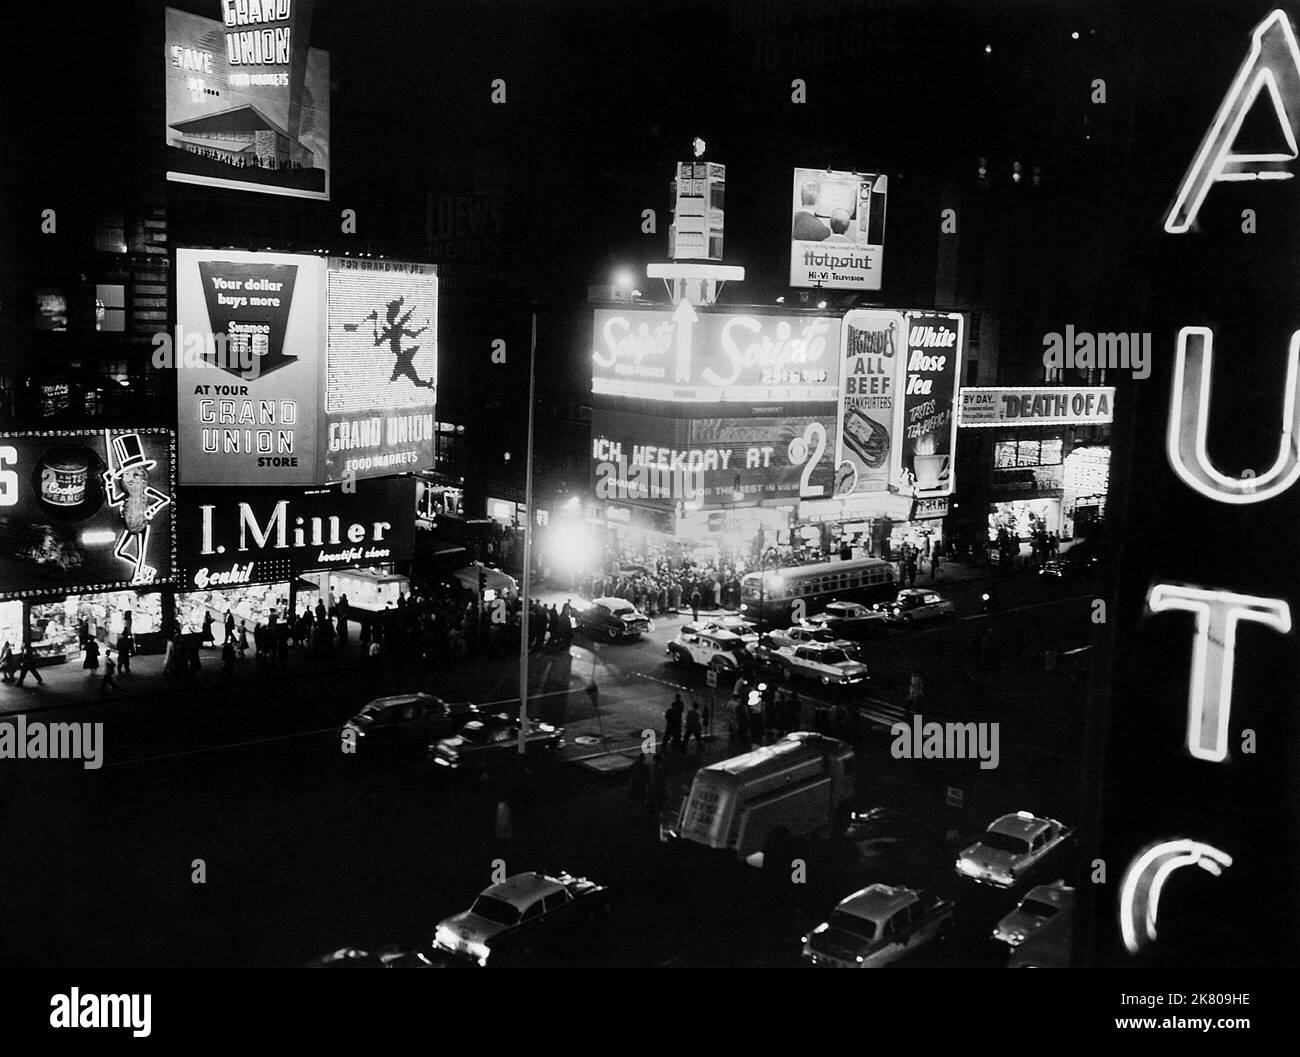 Scena notturna di Times Square Film: Sweet Smell of Success (1956) regista: Alexander Mackendrick 27 giugno 1957 **AVVERTENZA** questa fotografia è solo per uso editoriale ed è copyright di BLUE DOLPHIN e/o del fotografo assegnato dalla Film o dalla Production Company e può essere riprodotta solo da pubblicazioni in concomitanza con la promozione del film di cui sopra. È richiesto un credito obbligatorio per BLUE DOLPHIN. Il fotografo deve essere accreditato anche quando è noto. Nessun uso commerciale può essere concesso senza autorizzazione scritta da parte della Film Company. Foto Stock